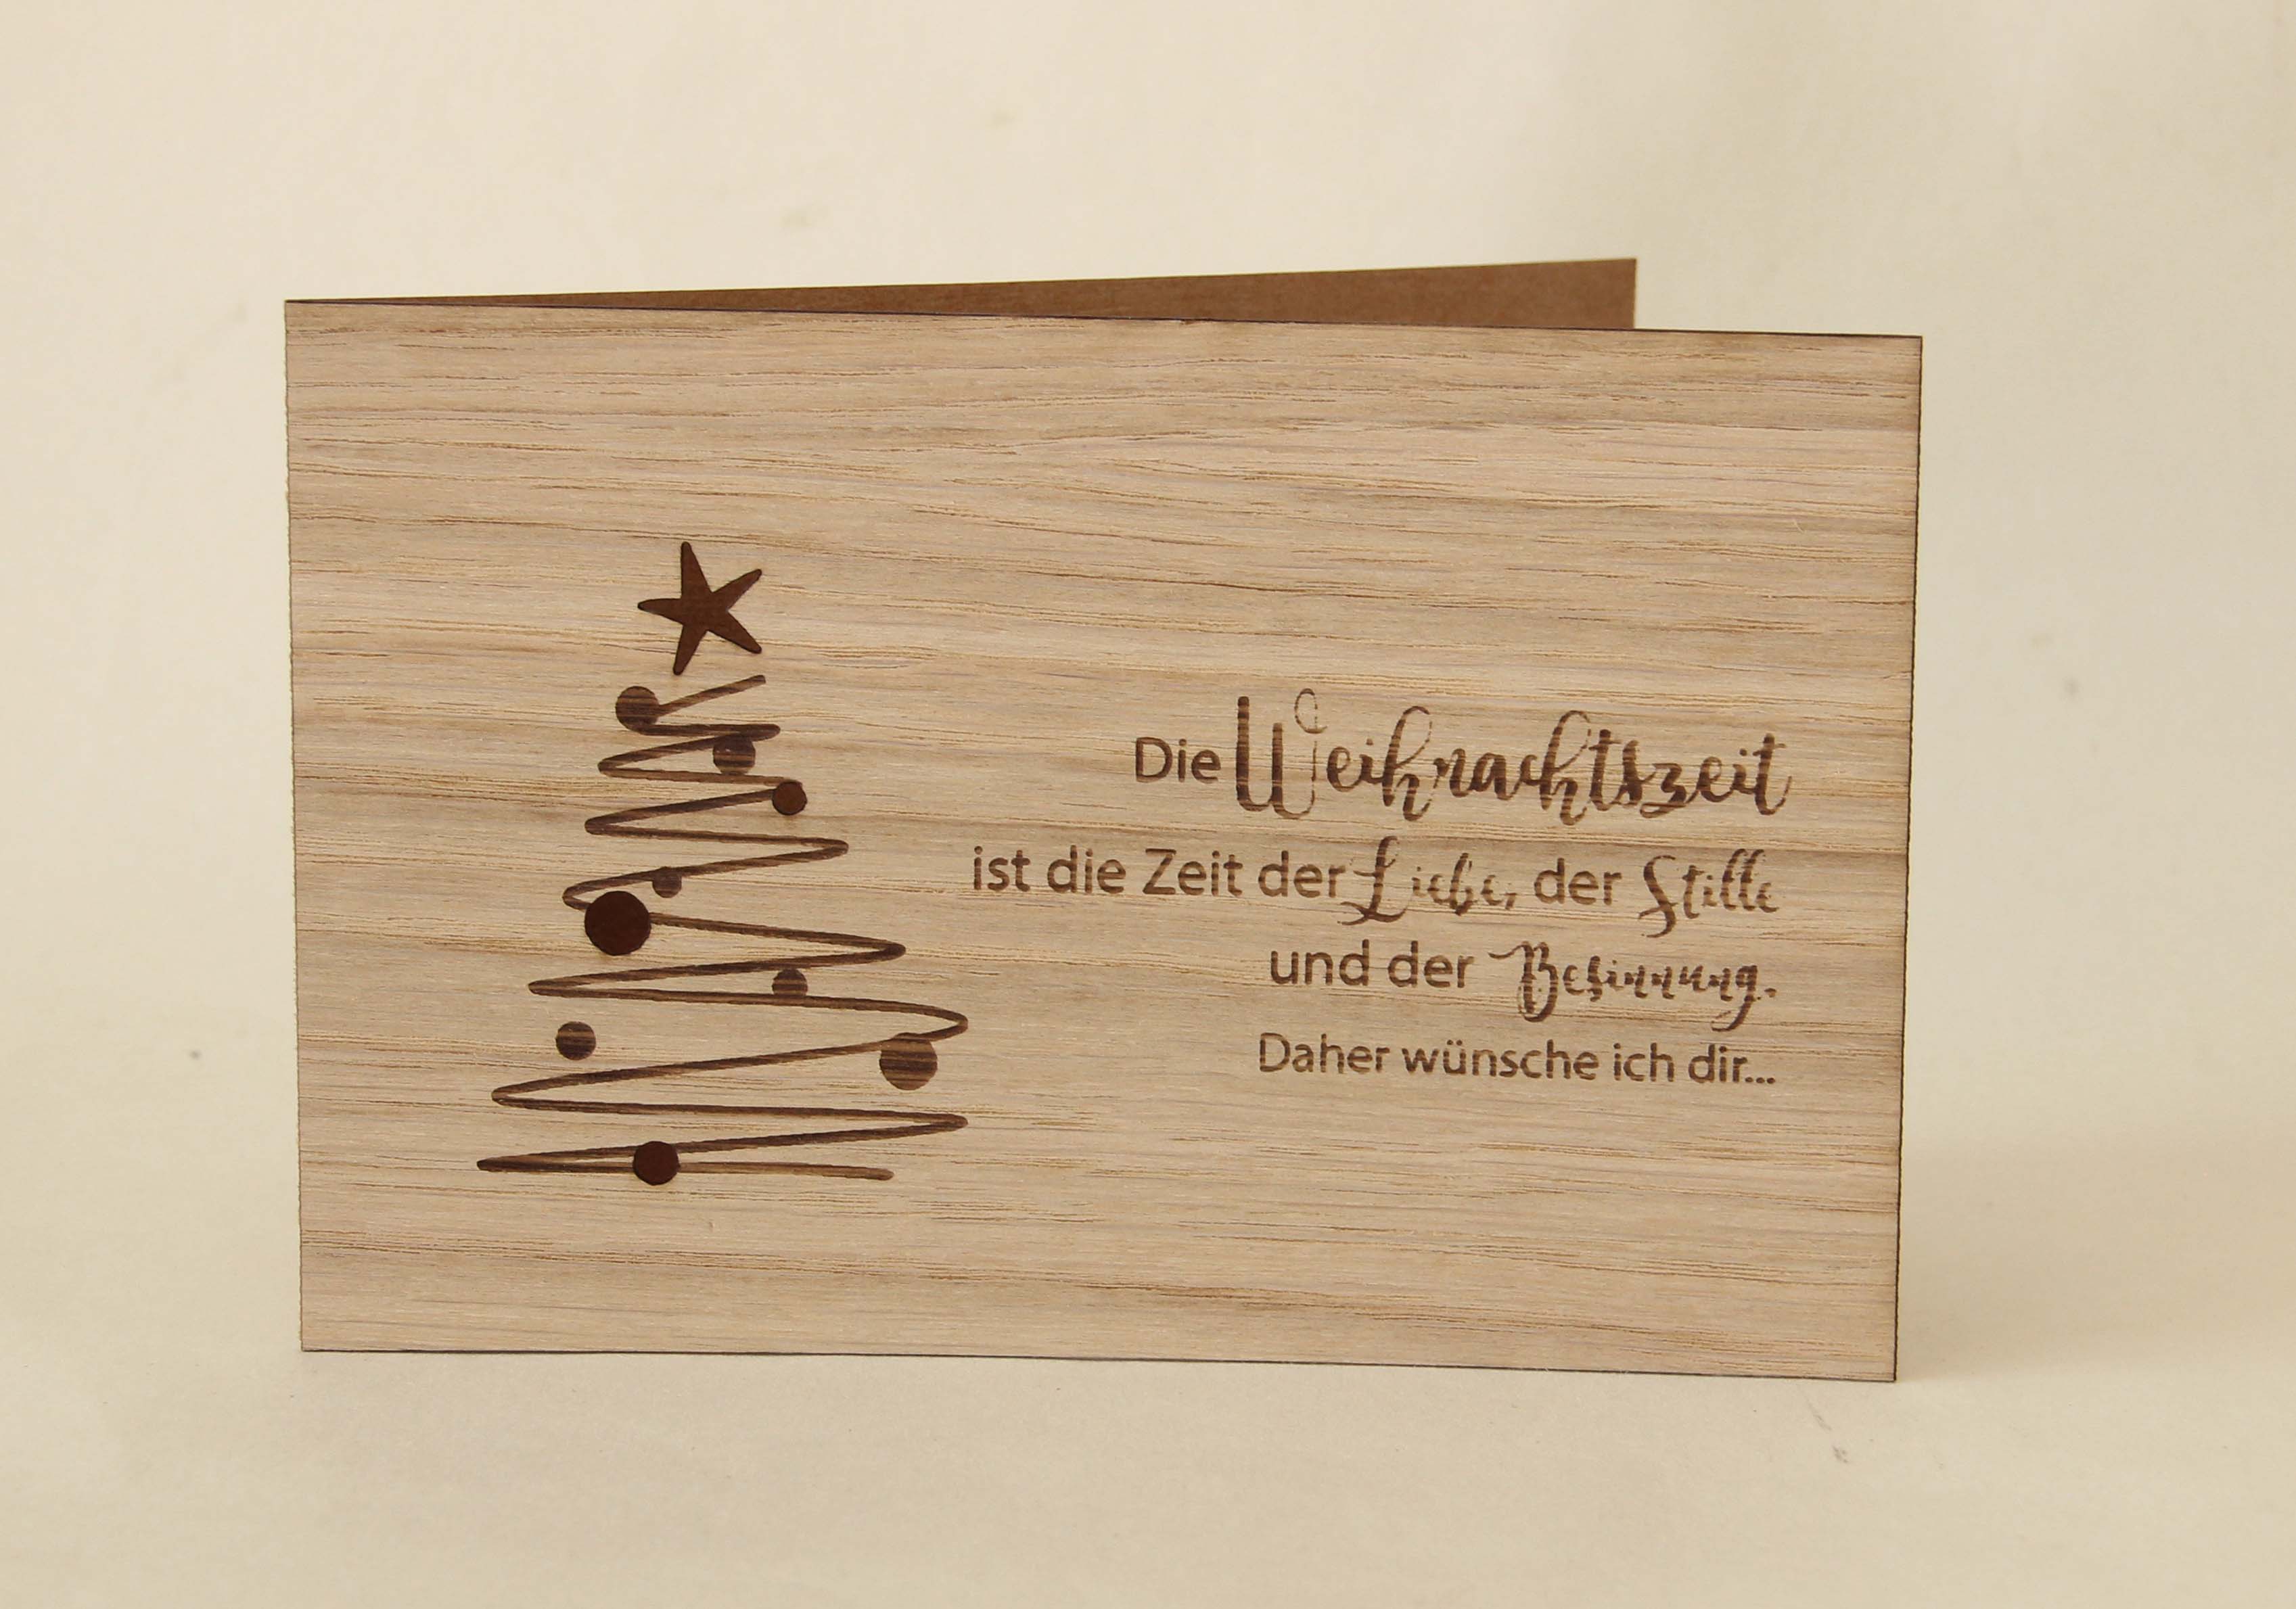 Holzgrusskarten - Weihnachtskarte "Die Weihnachtszeit" aus Eiche, Weihnachtsbaum